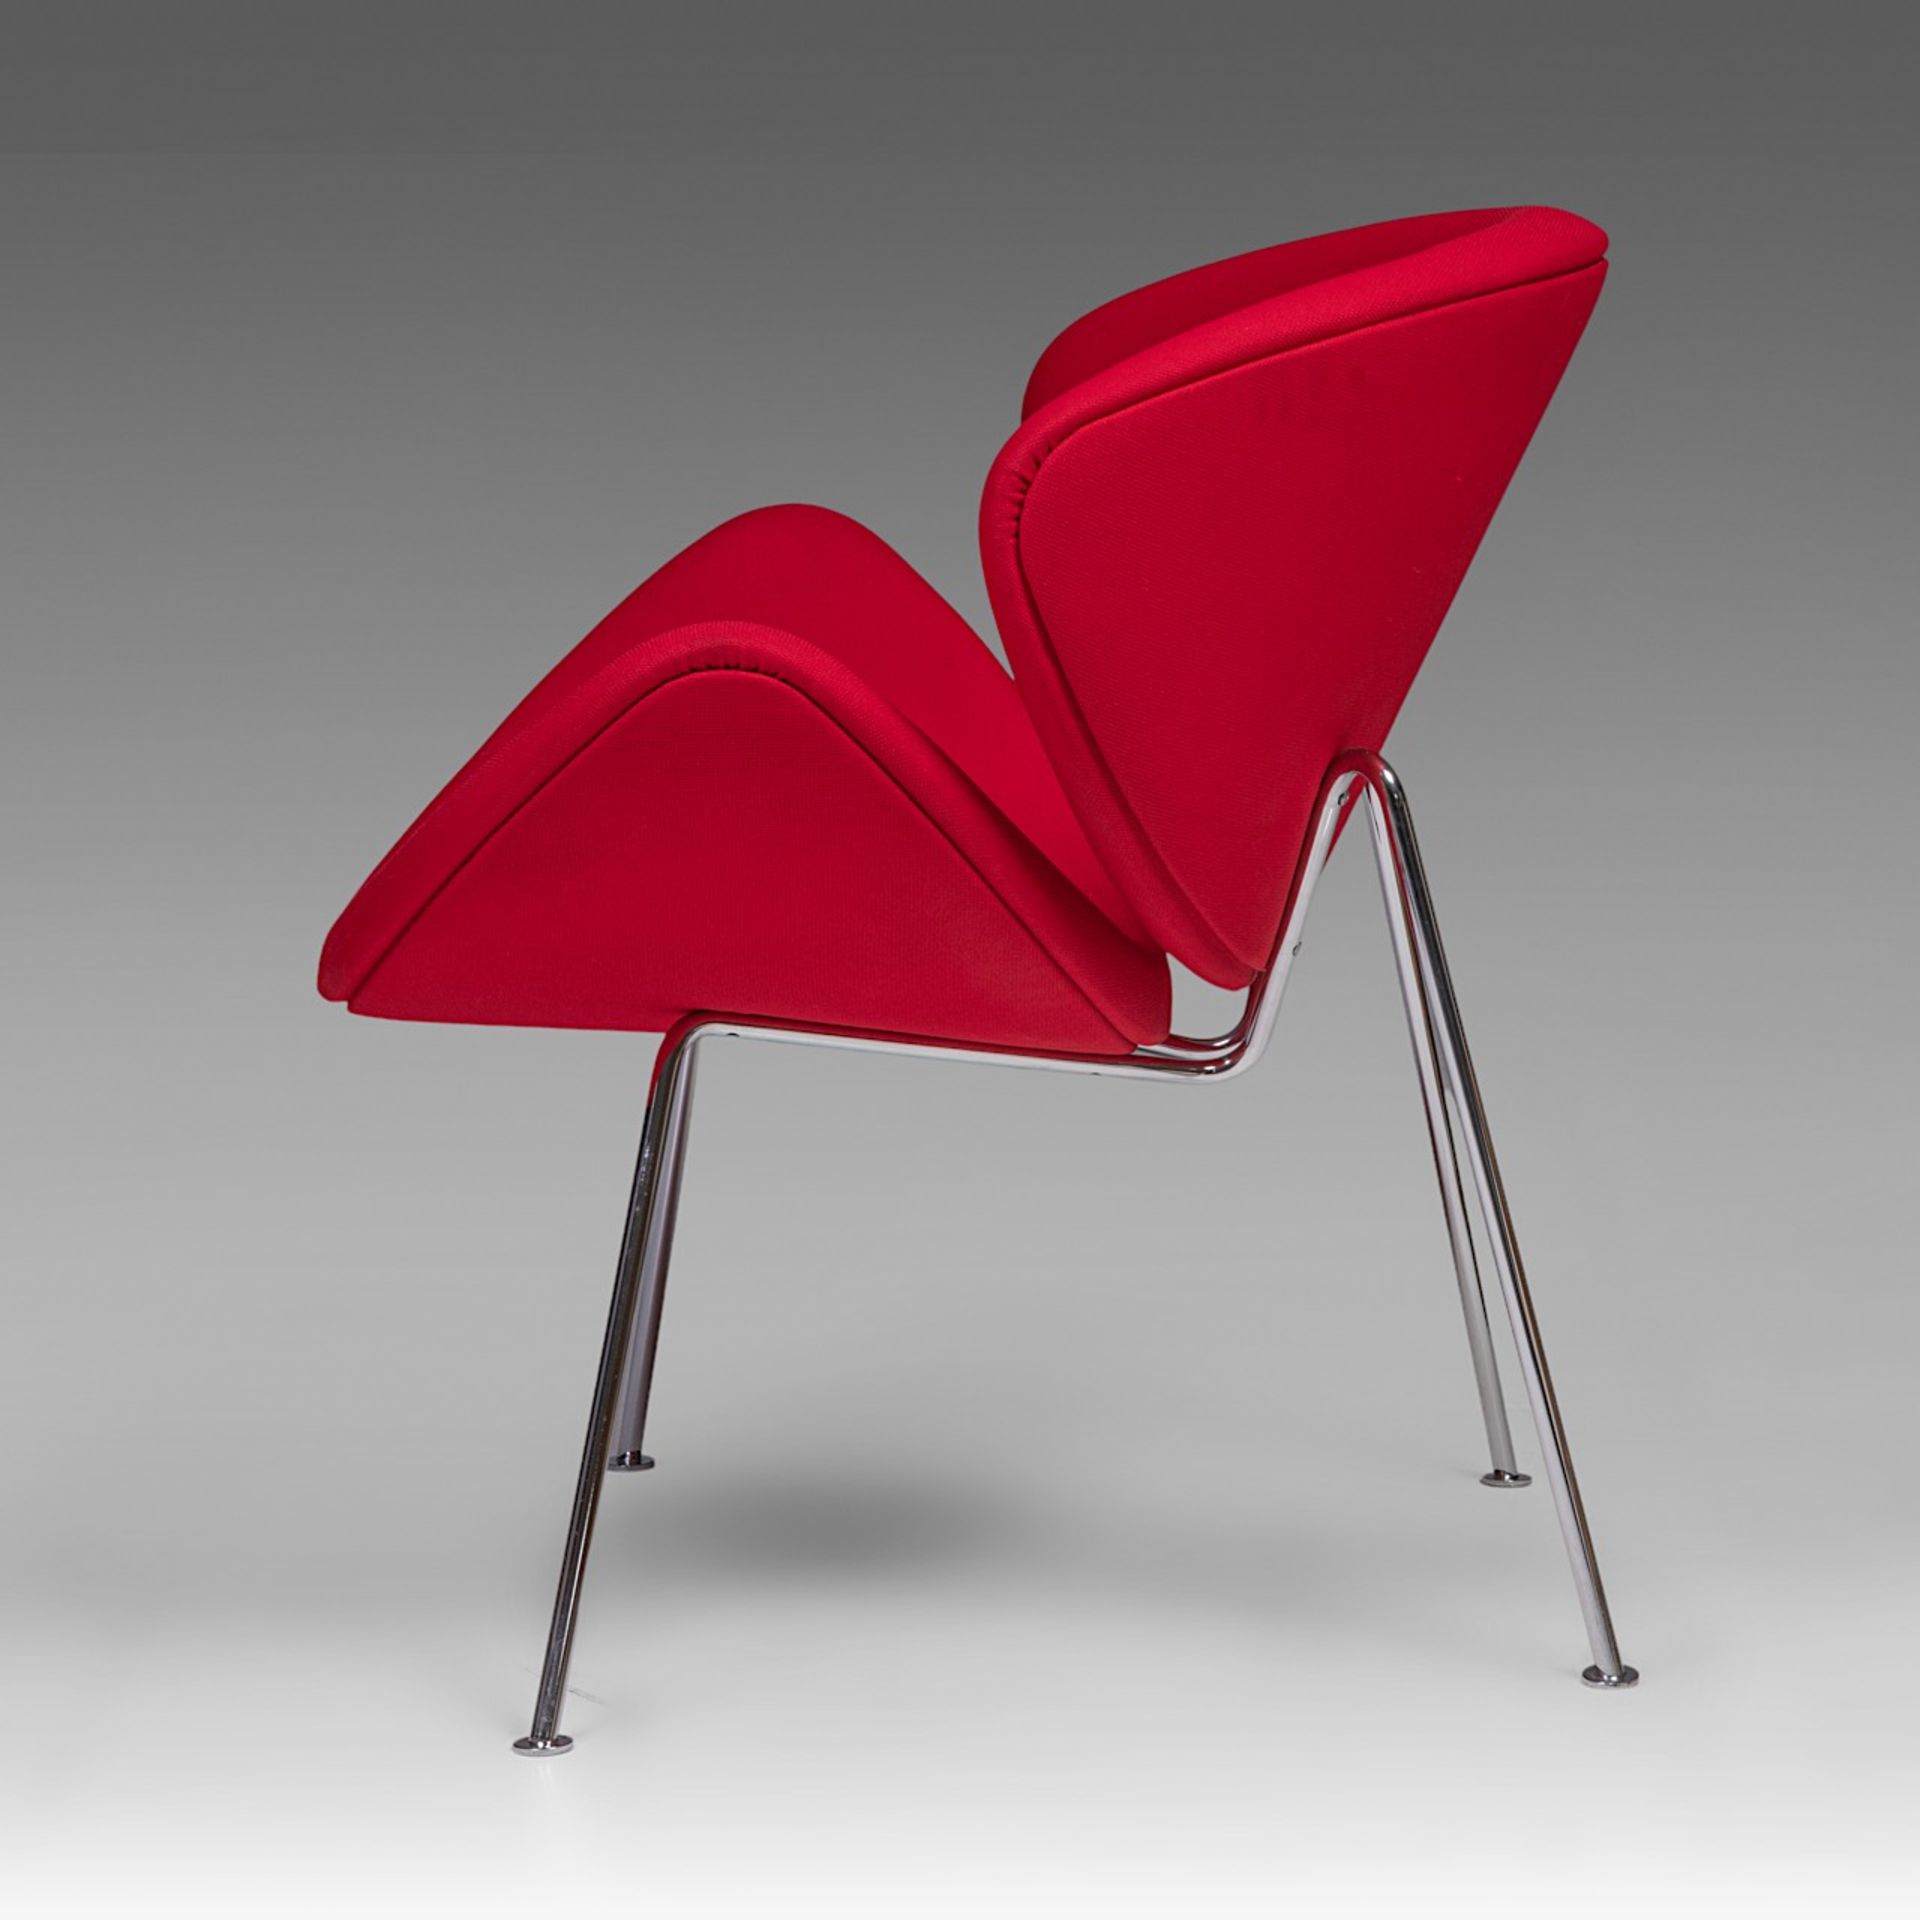 An Orange Slice chair by Pierre Pauline for Artifort, H 85 - W 82 cm - Bild 4 aus 9